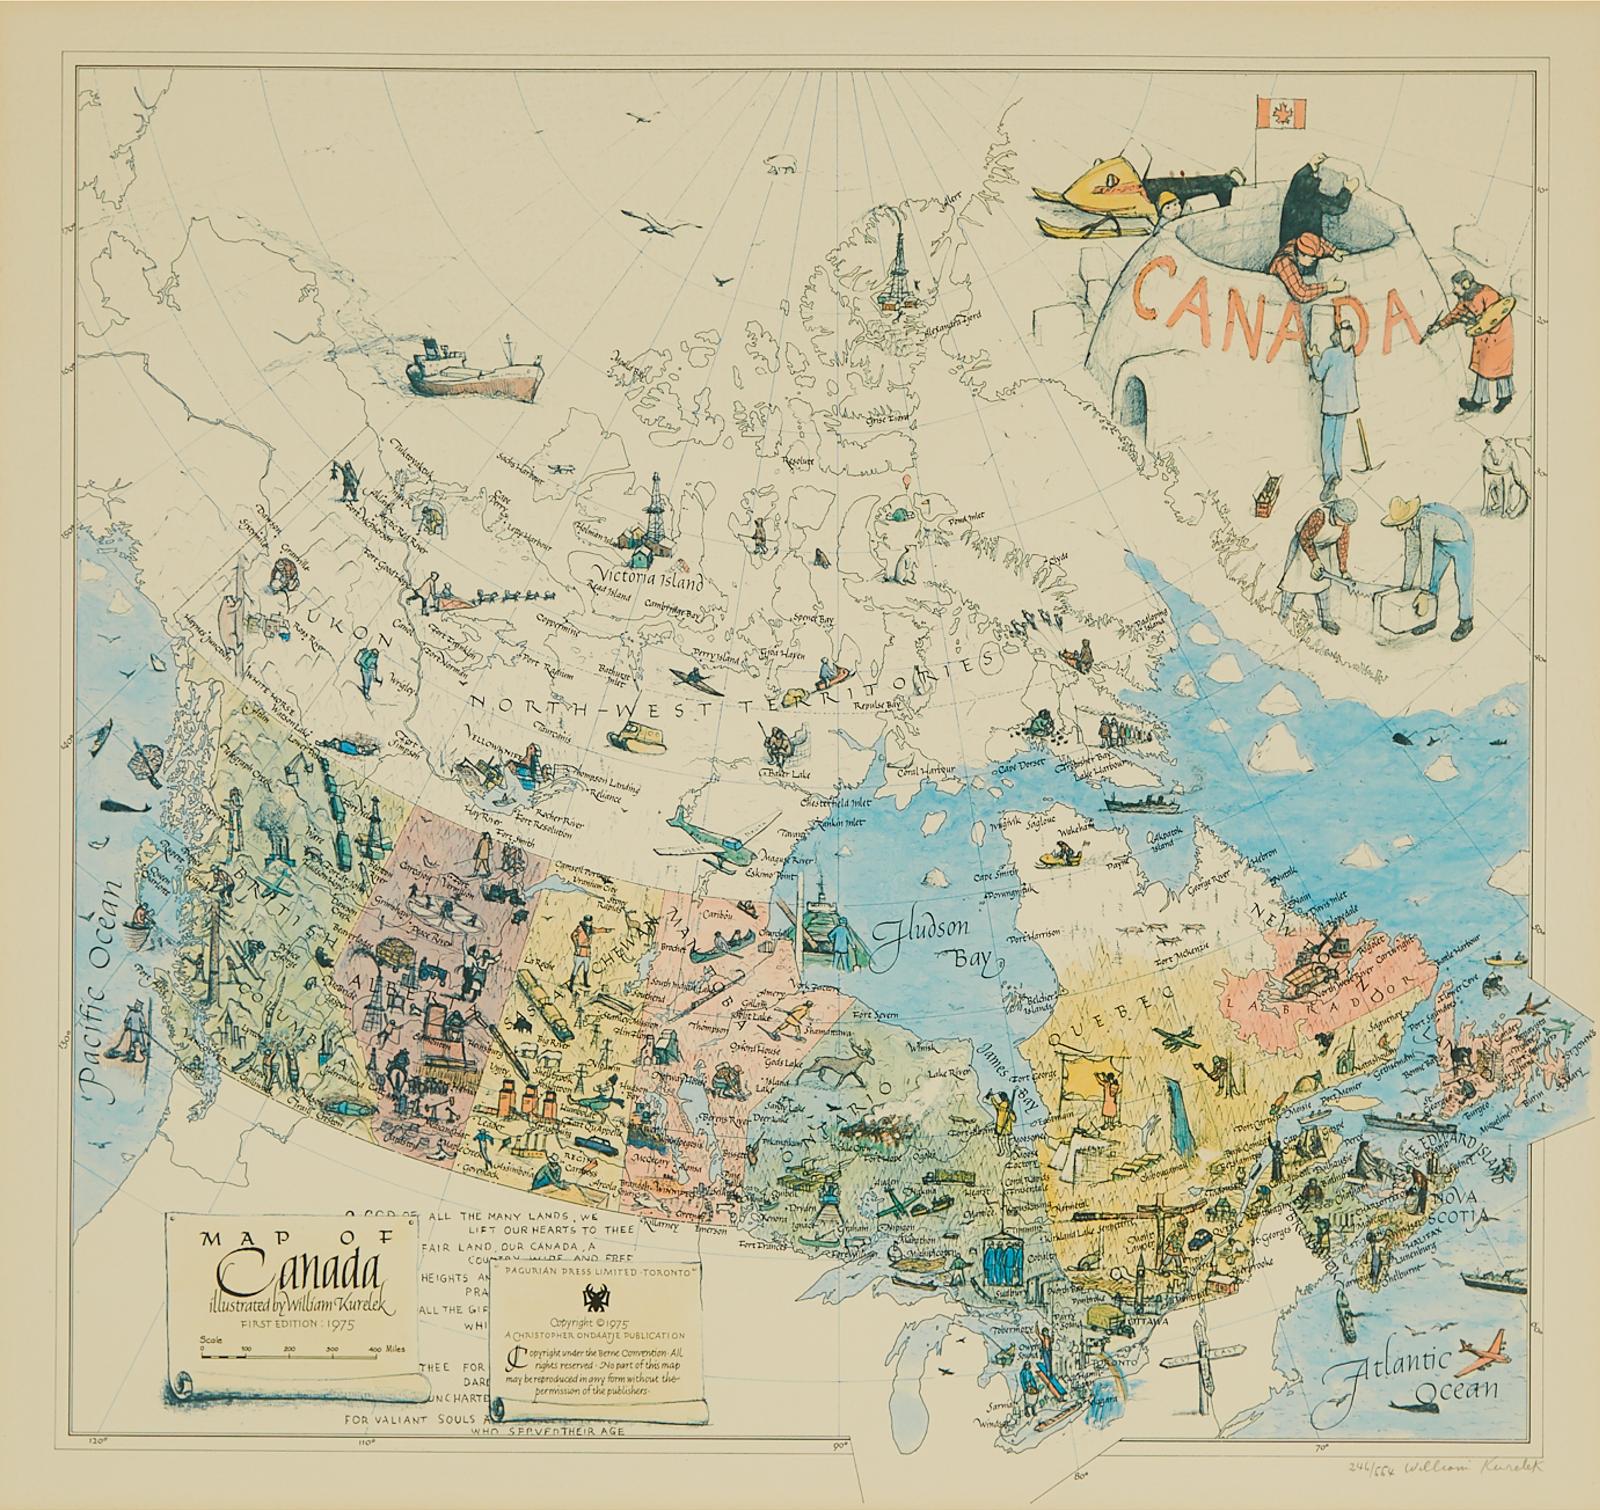 William Kurelek (1927-1977) - Map Of Canada, 1975